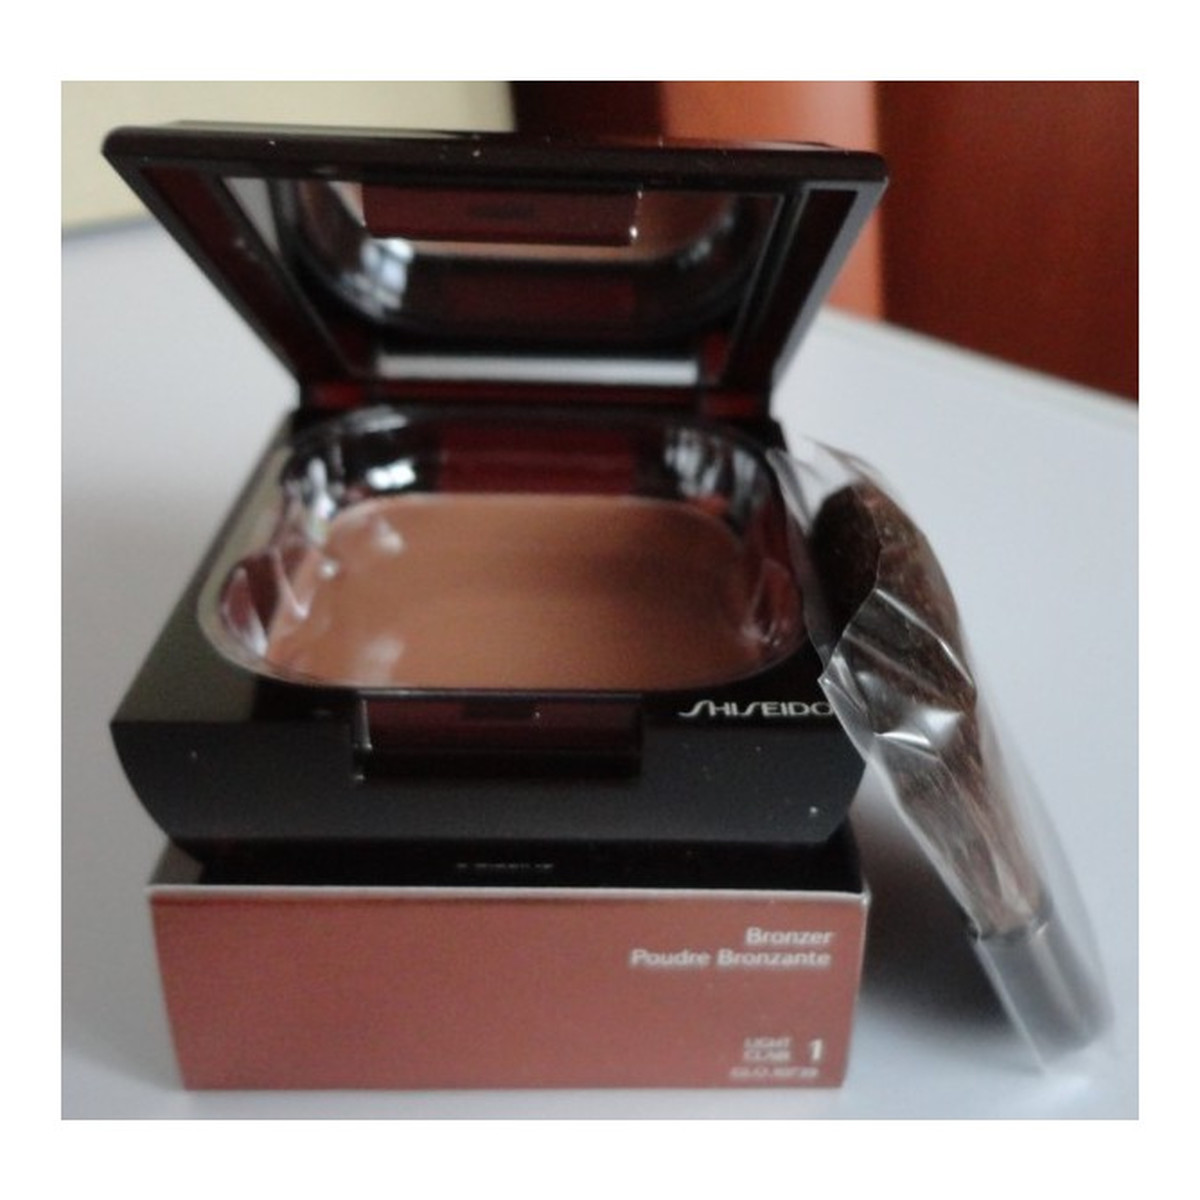 Shiseido Bronzer Oil Free Puder brązujący 12g